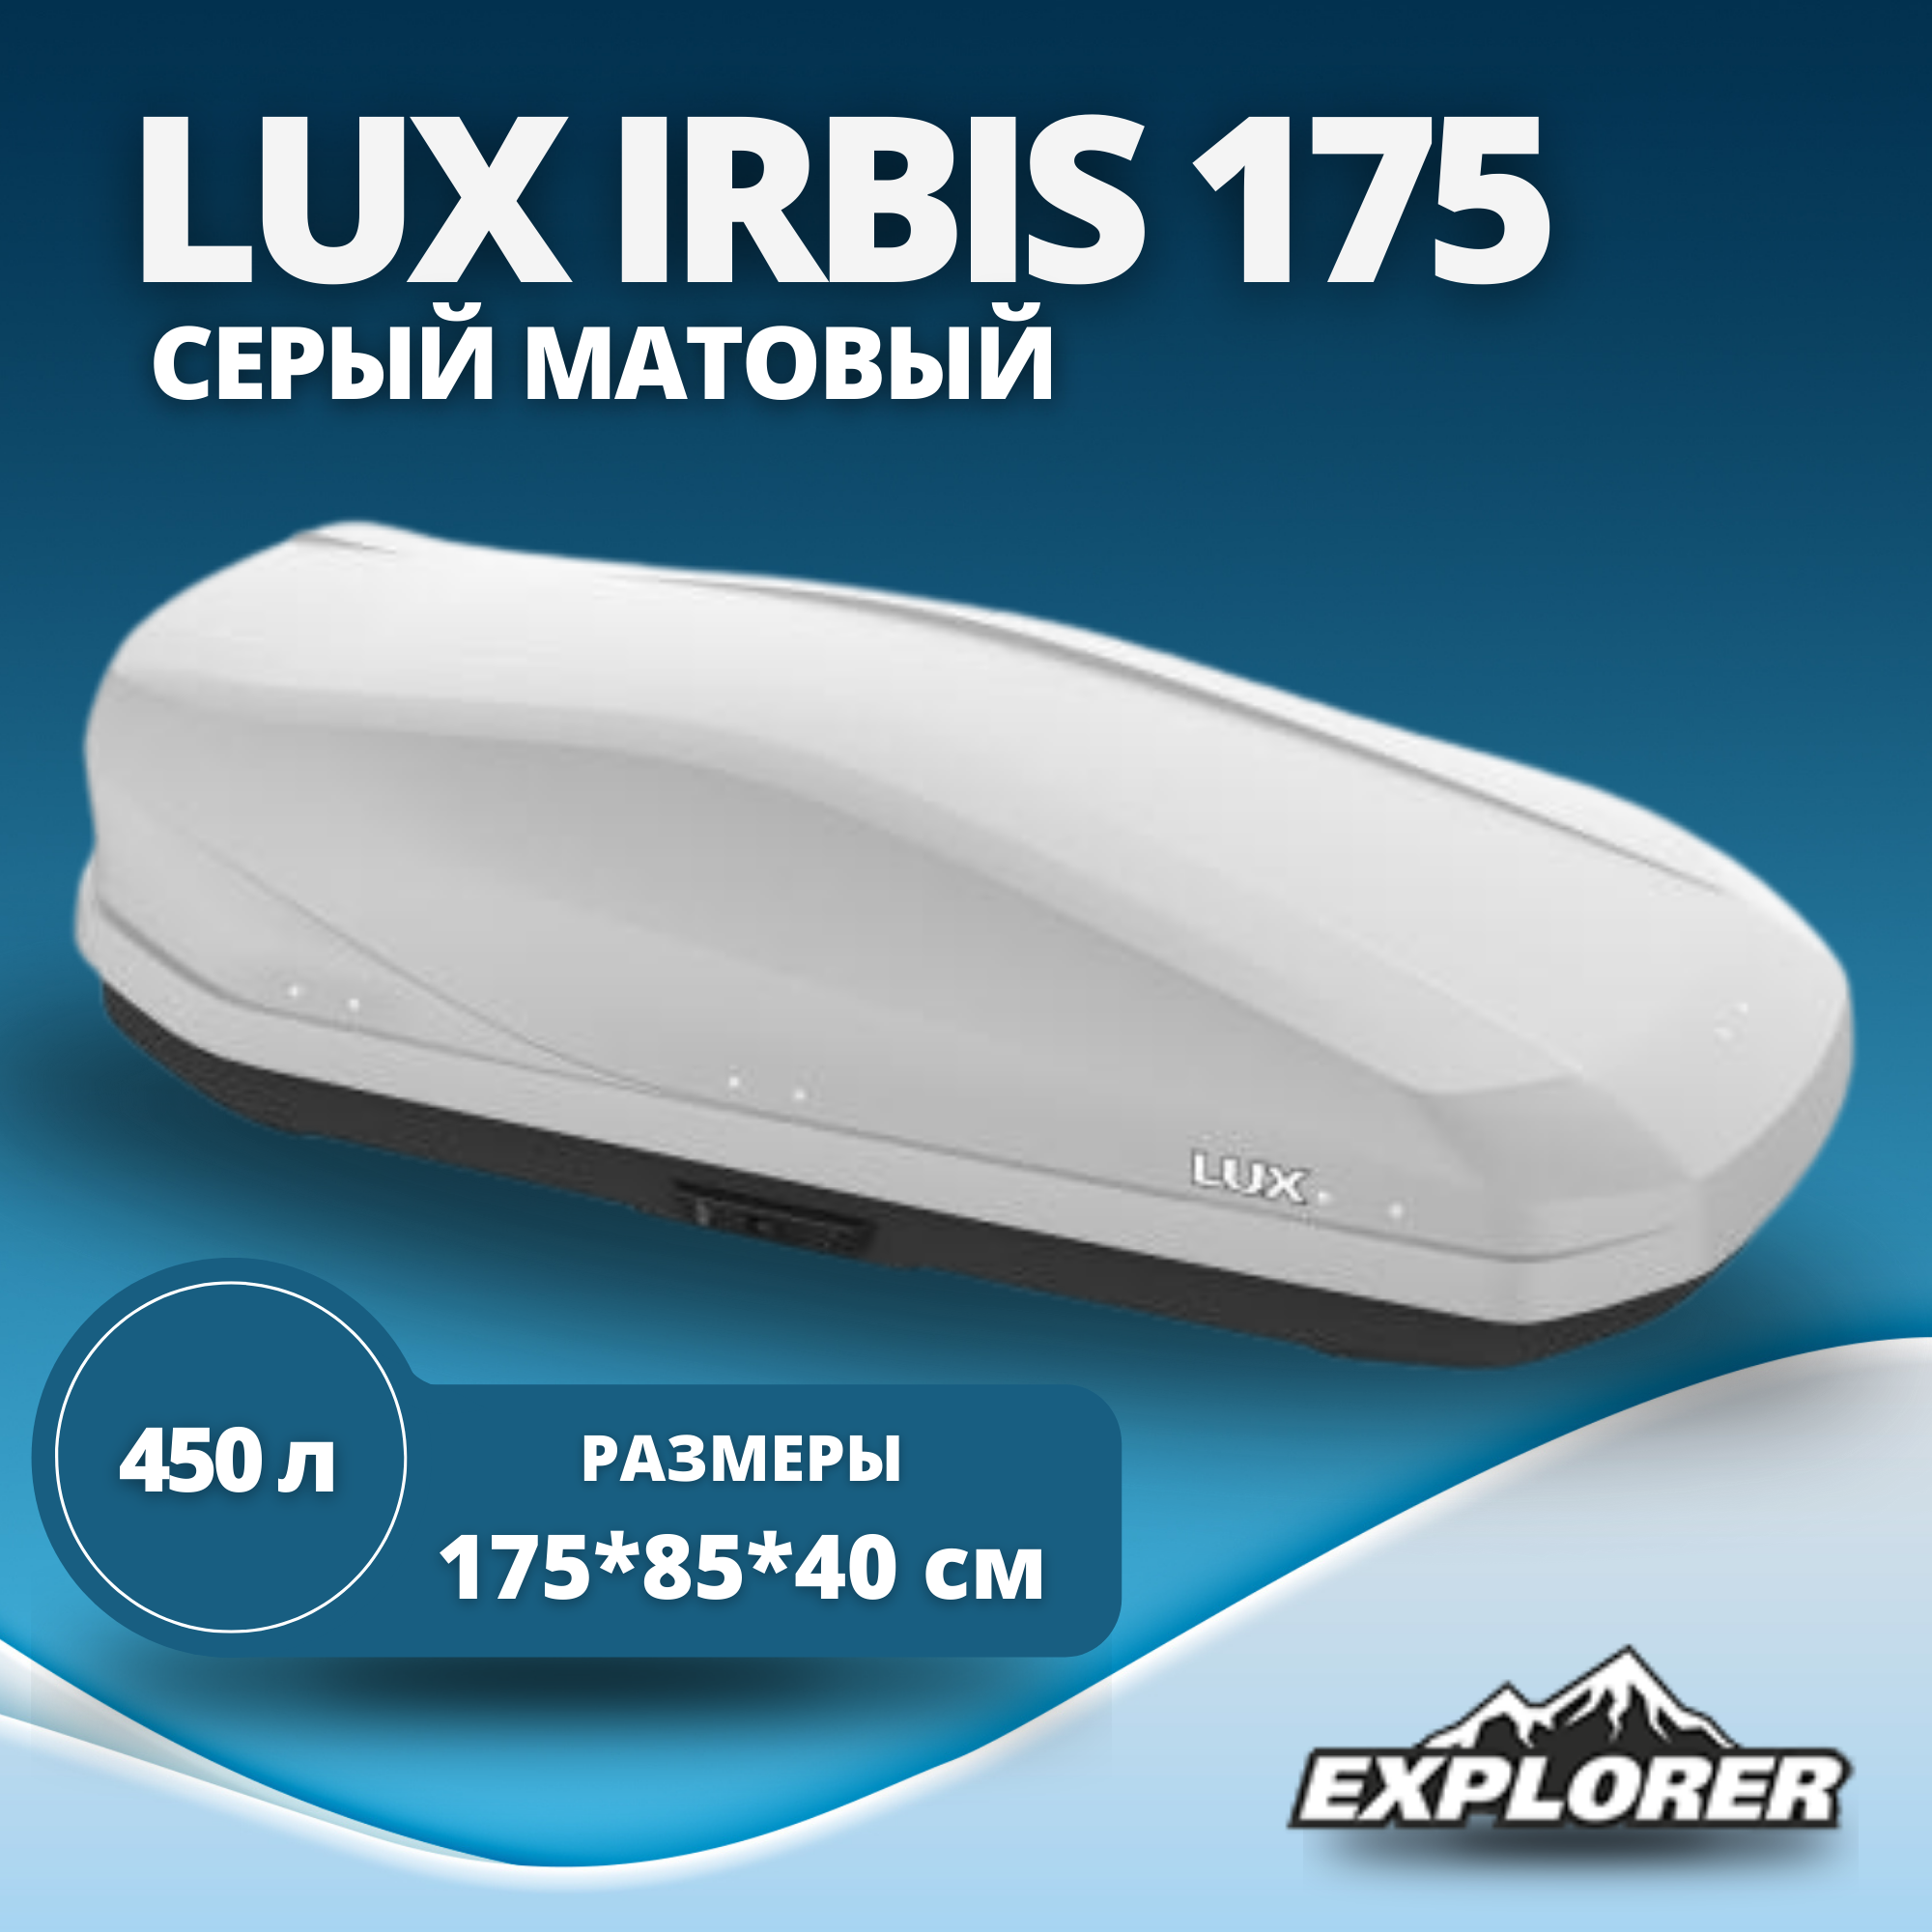 Автобокс LUX IRBIS 175 серый матовый 450L с двустор. откр. (1750х850х400) (арт. 790951)